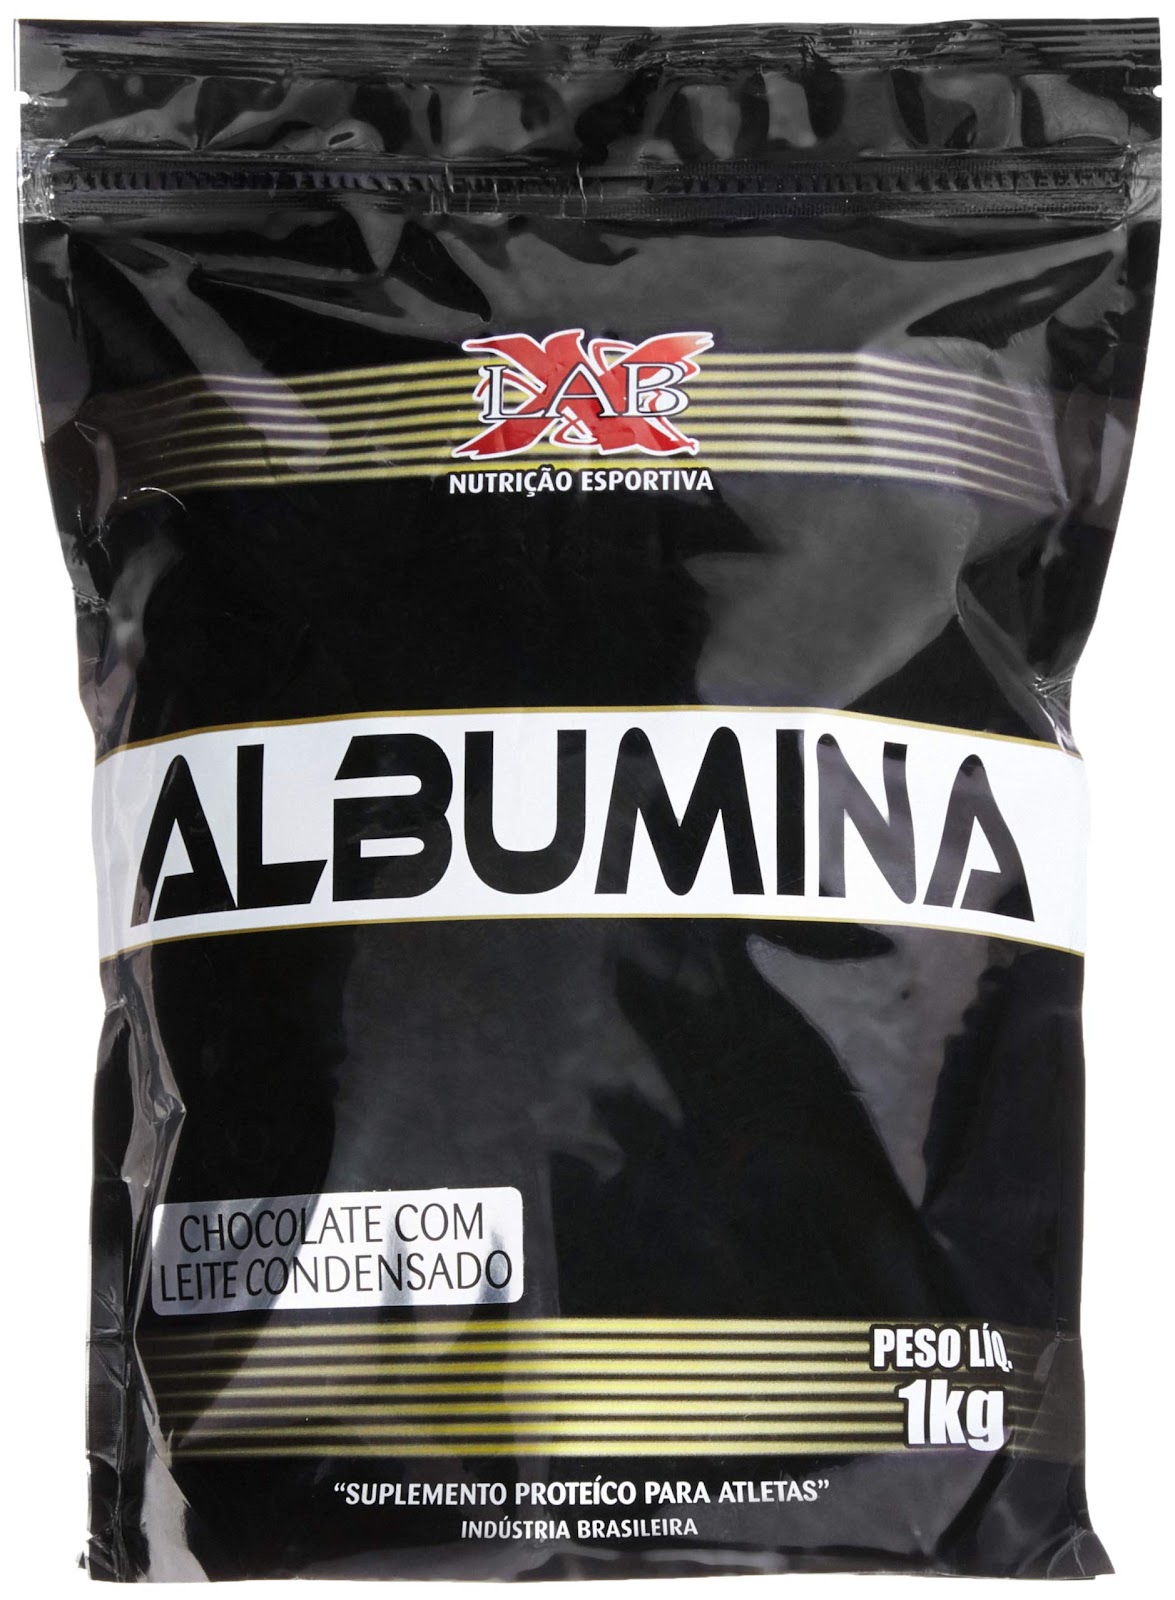 Albumina - 1000G Chocolate com Leite Condensado - X-Lab